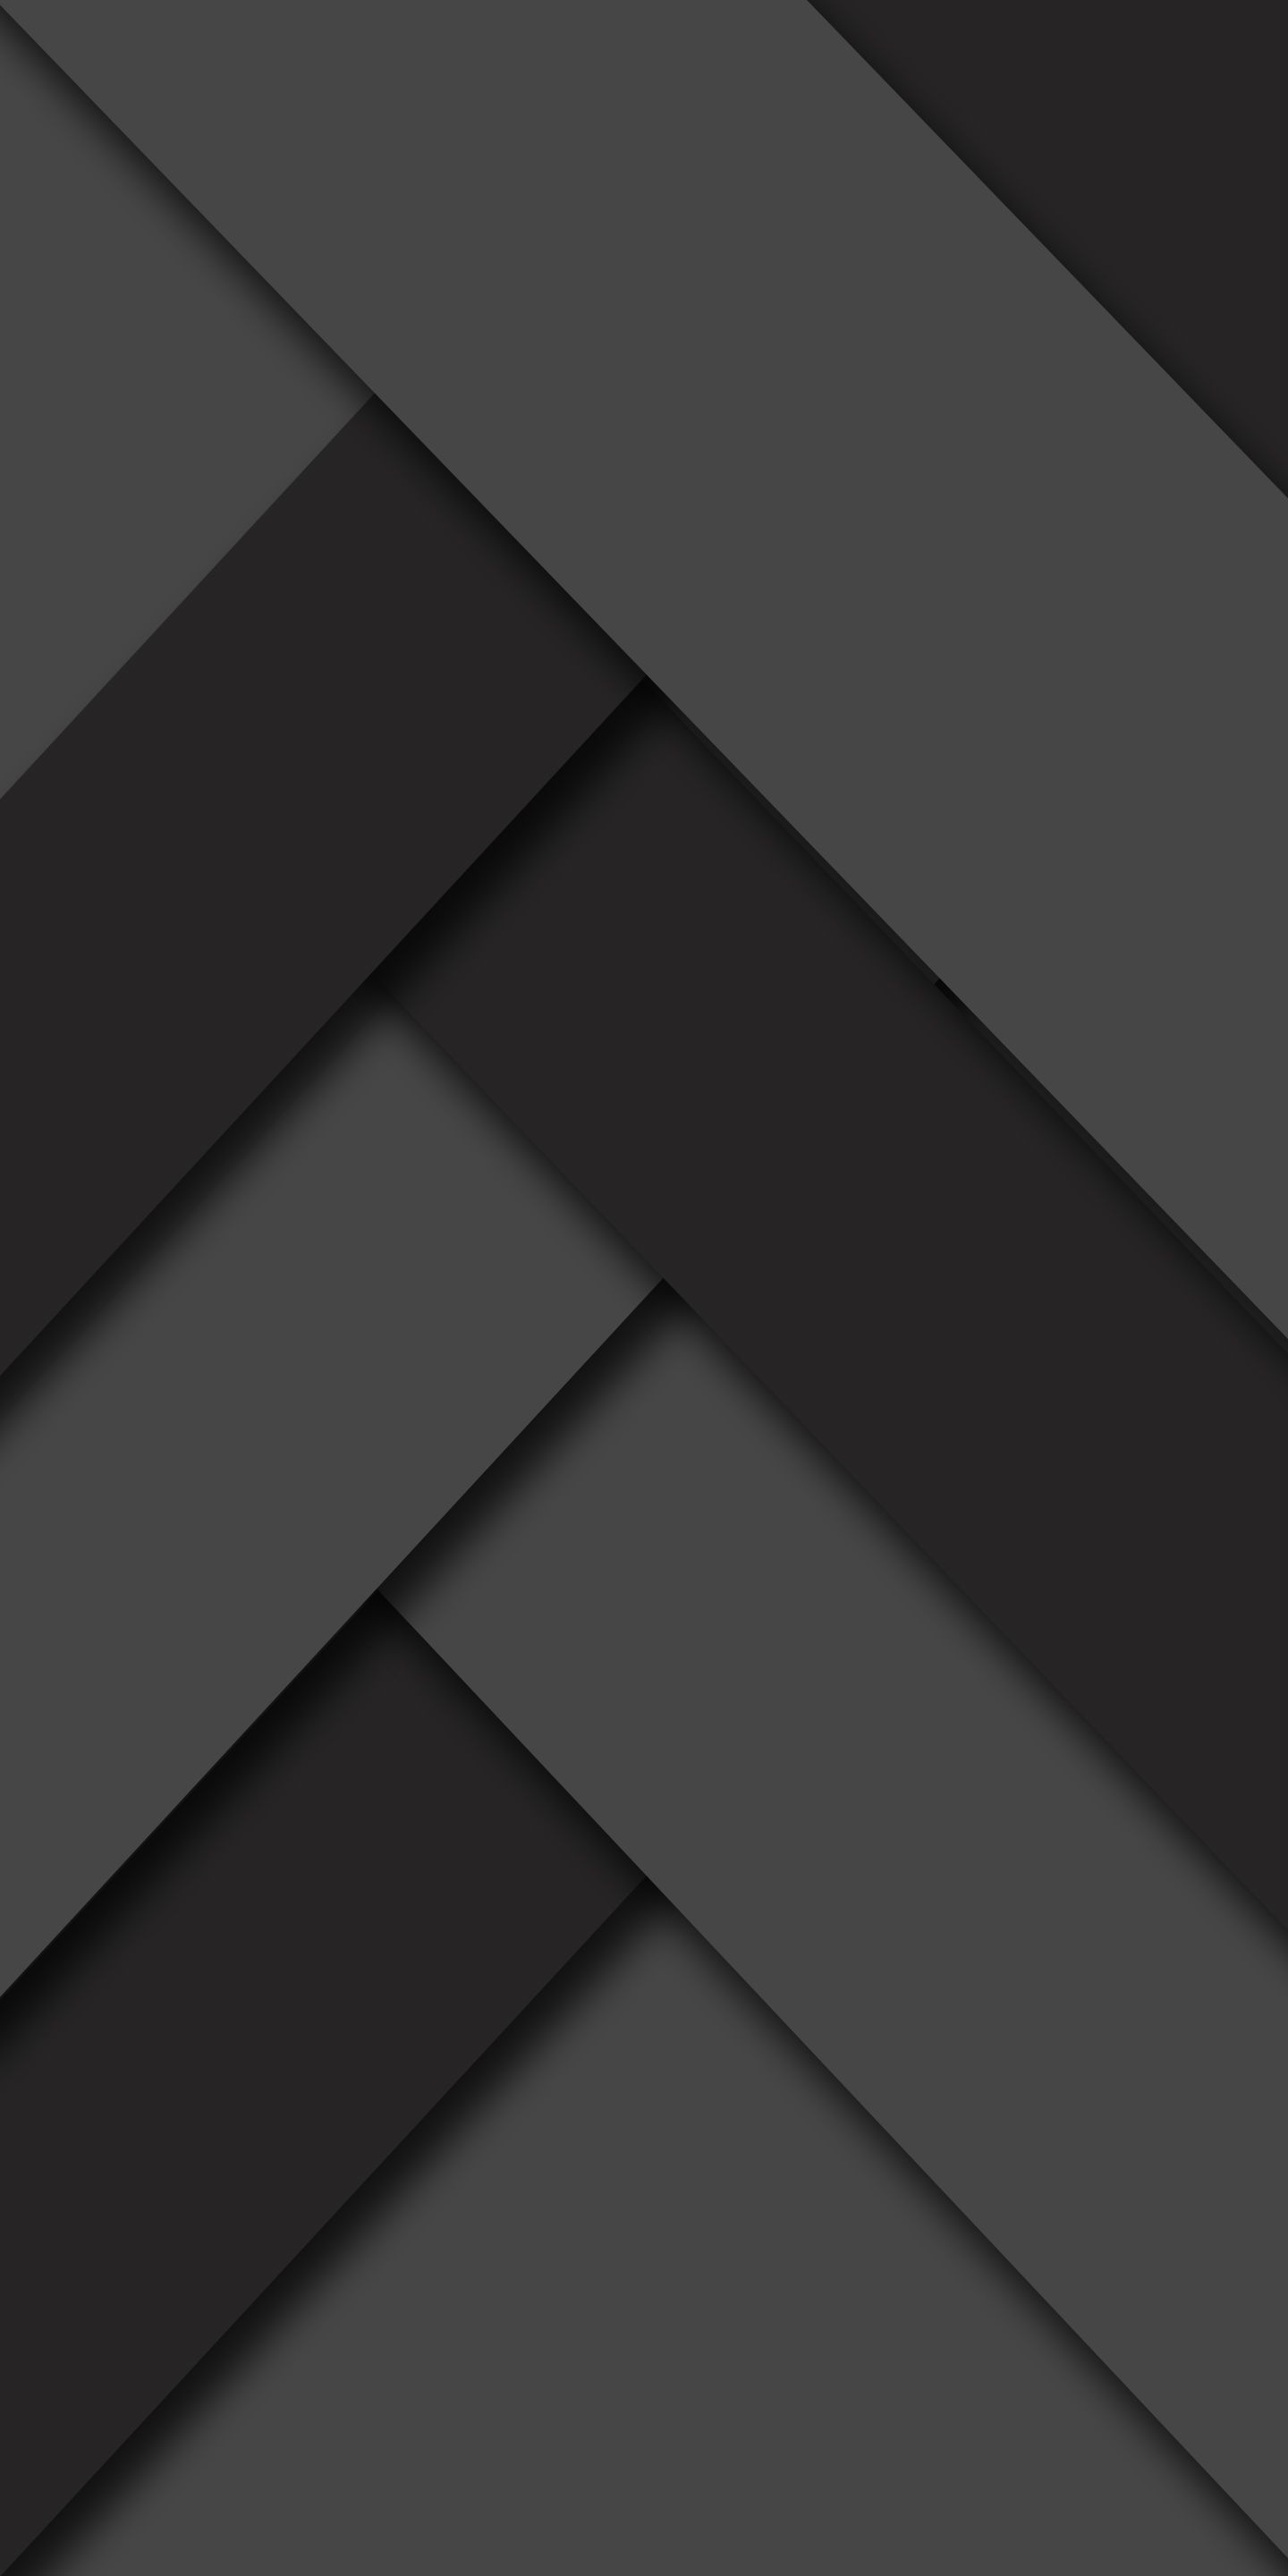 Material Design Black White, - Dark Wallpaper 18 9 , HD Wallpaper & Backgrounds